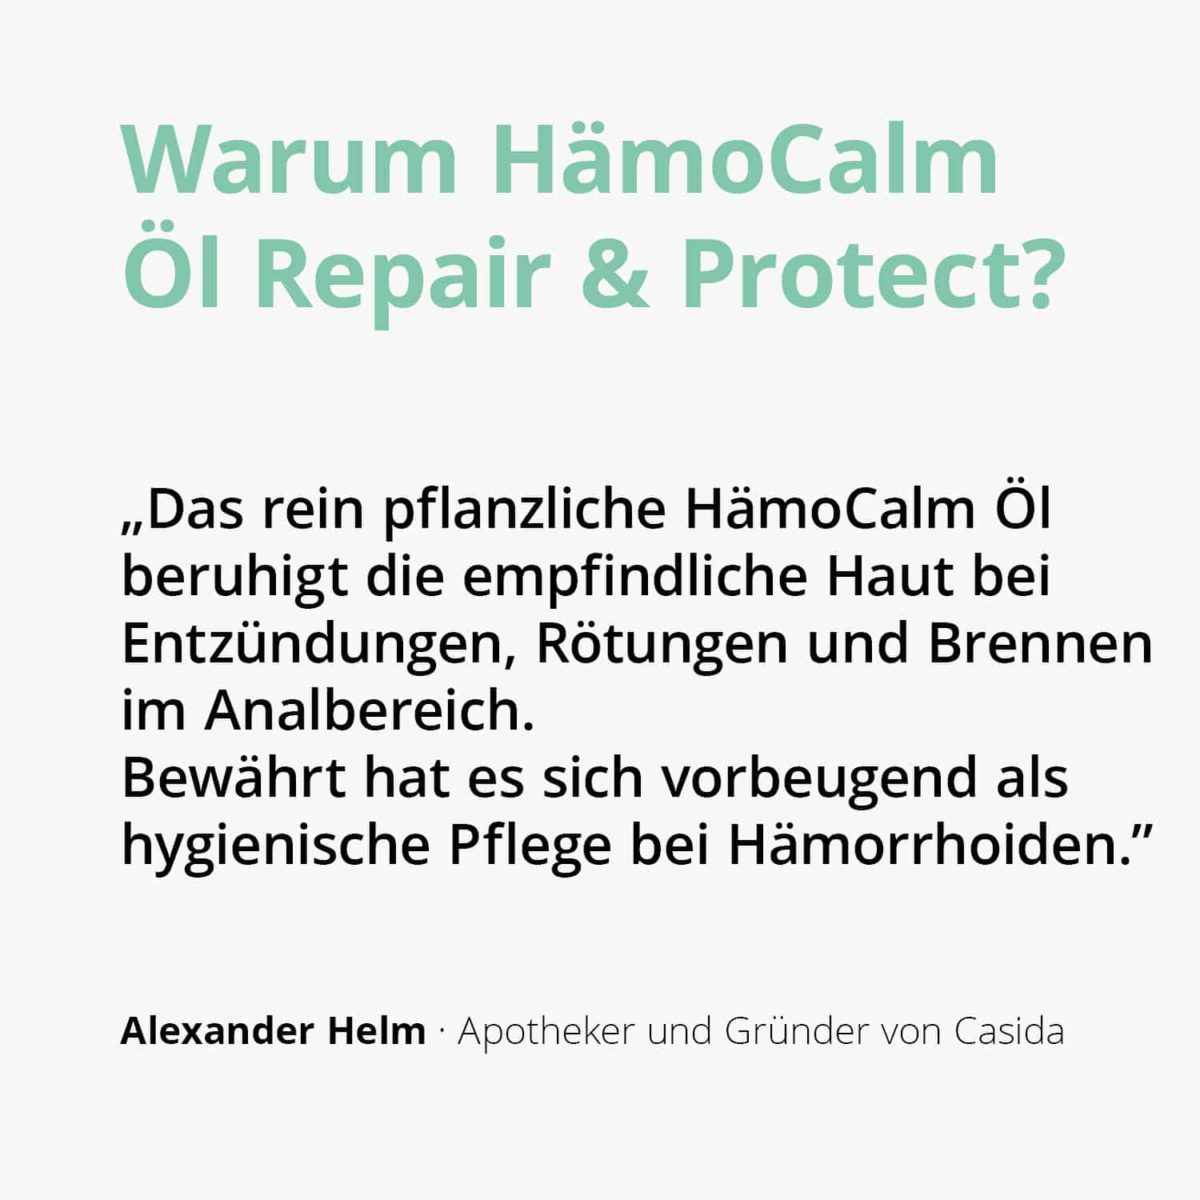 HemoCalm Oil Repair & Protect